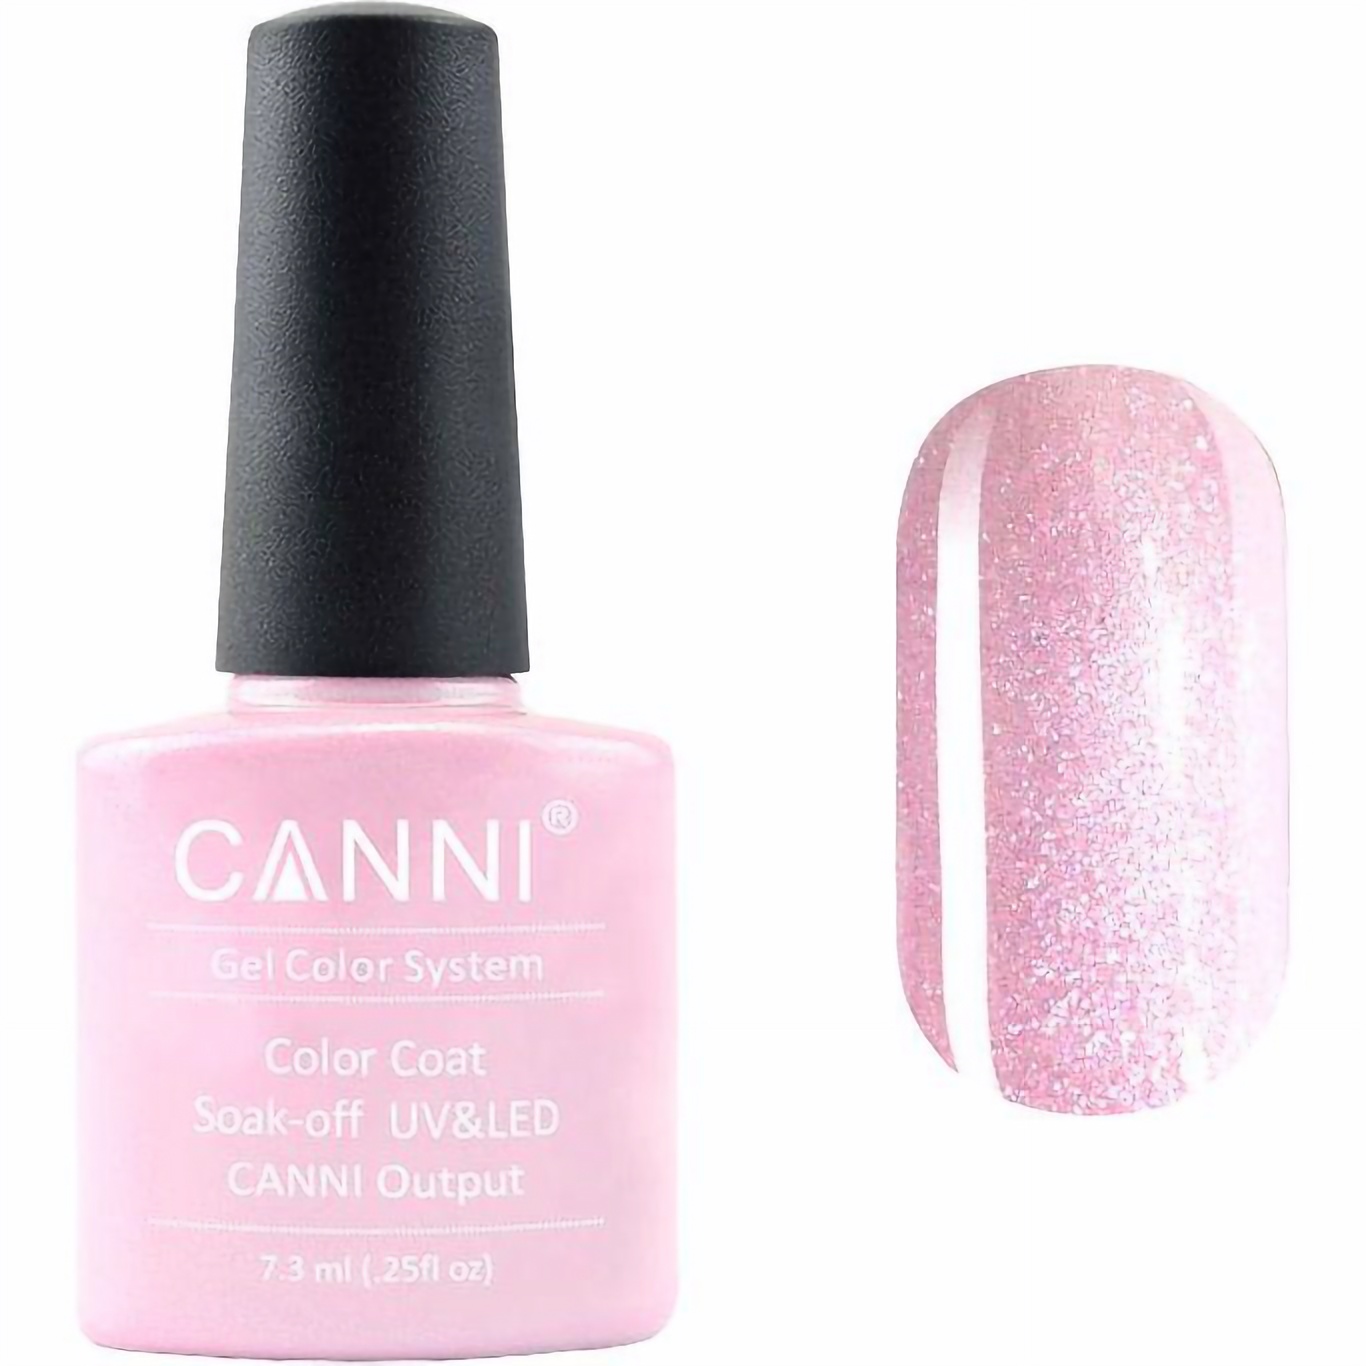 Гель-лак Canni Color Coat Soak-off UV&LED 198 нежный розовый перламутр 7.3 мл - фото 1